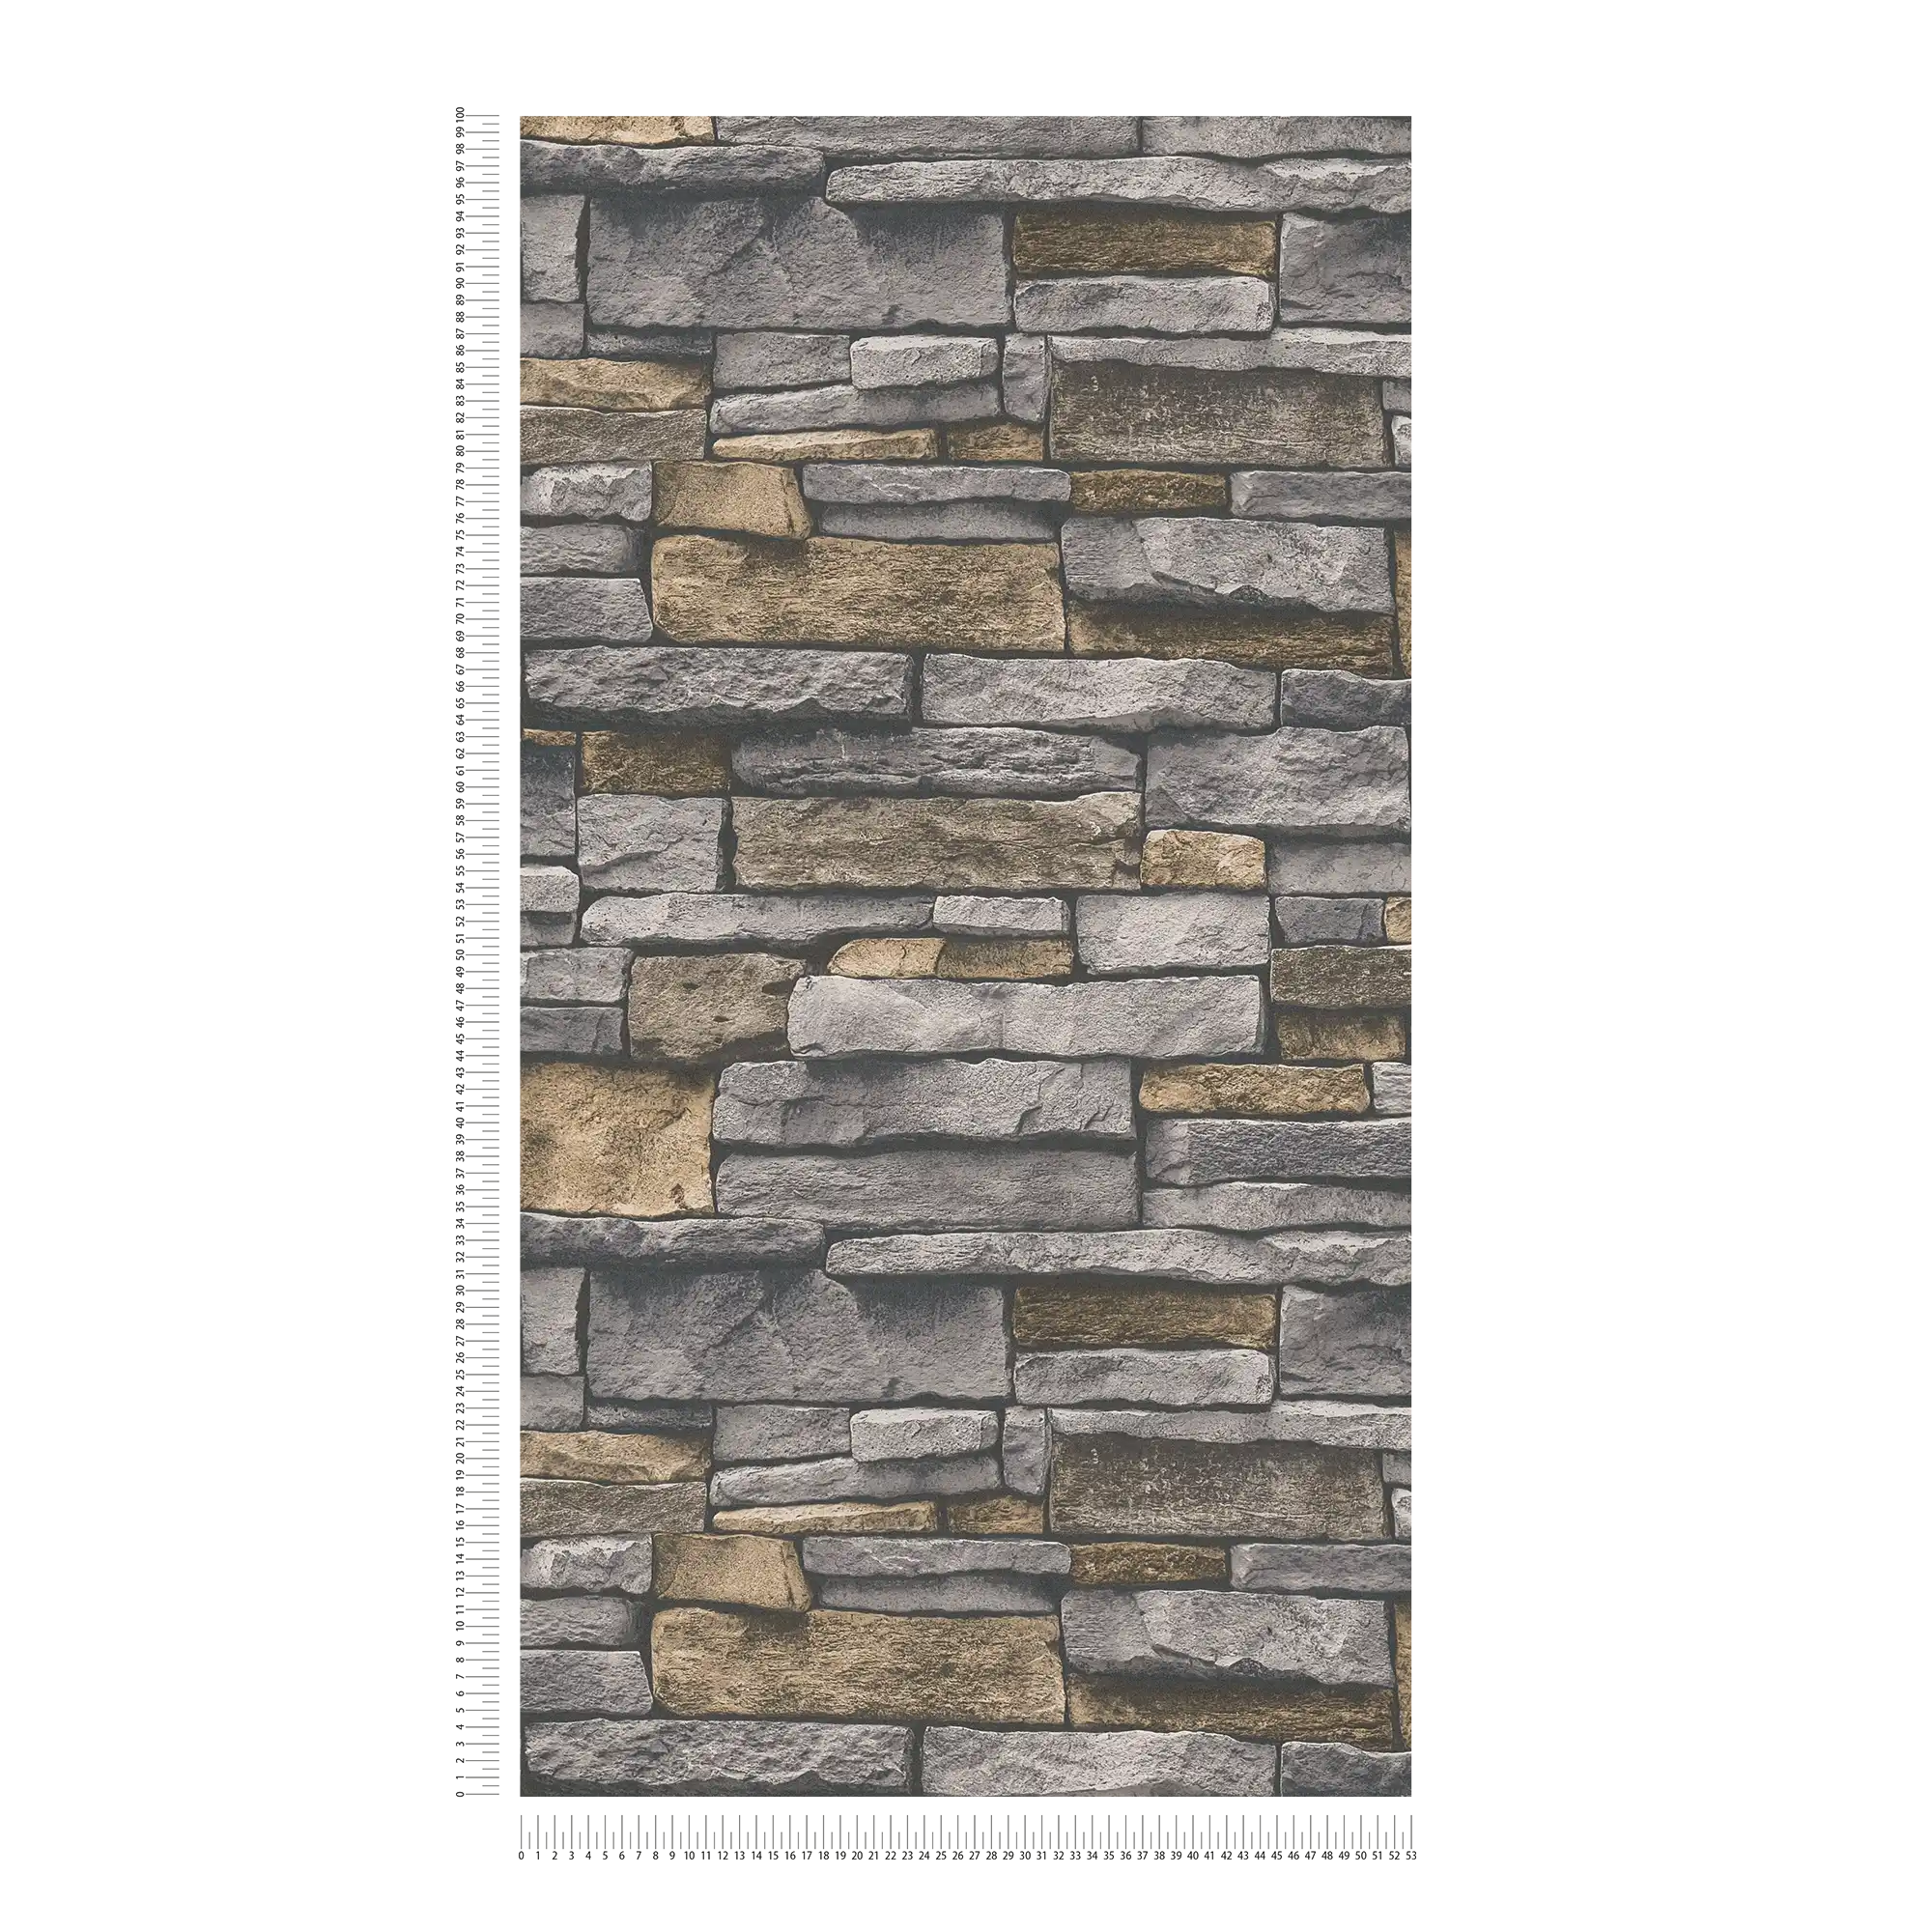             Vliesbehang in steenlook met natuurstenen muur - grijs, beige
        